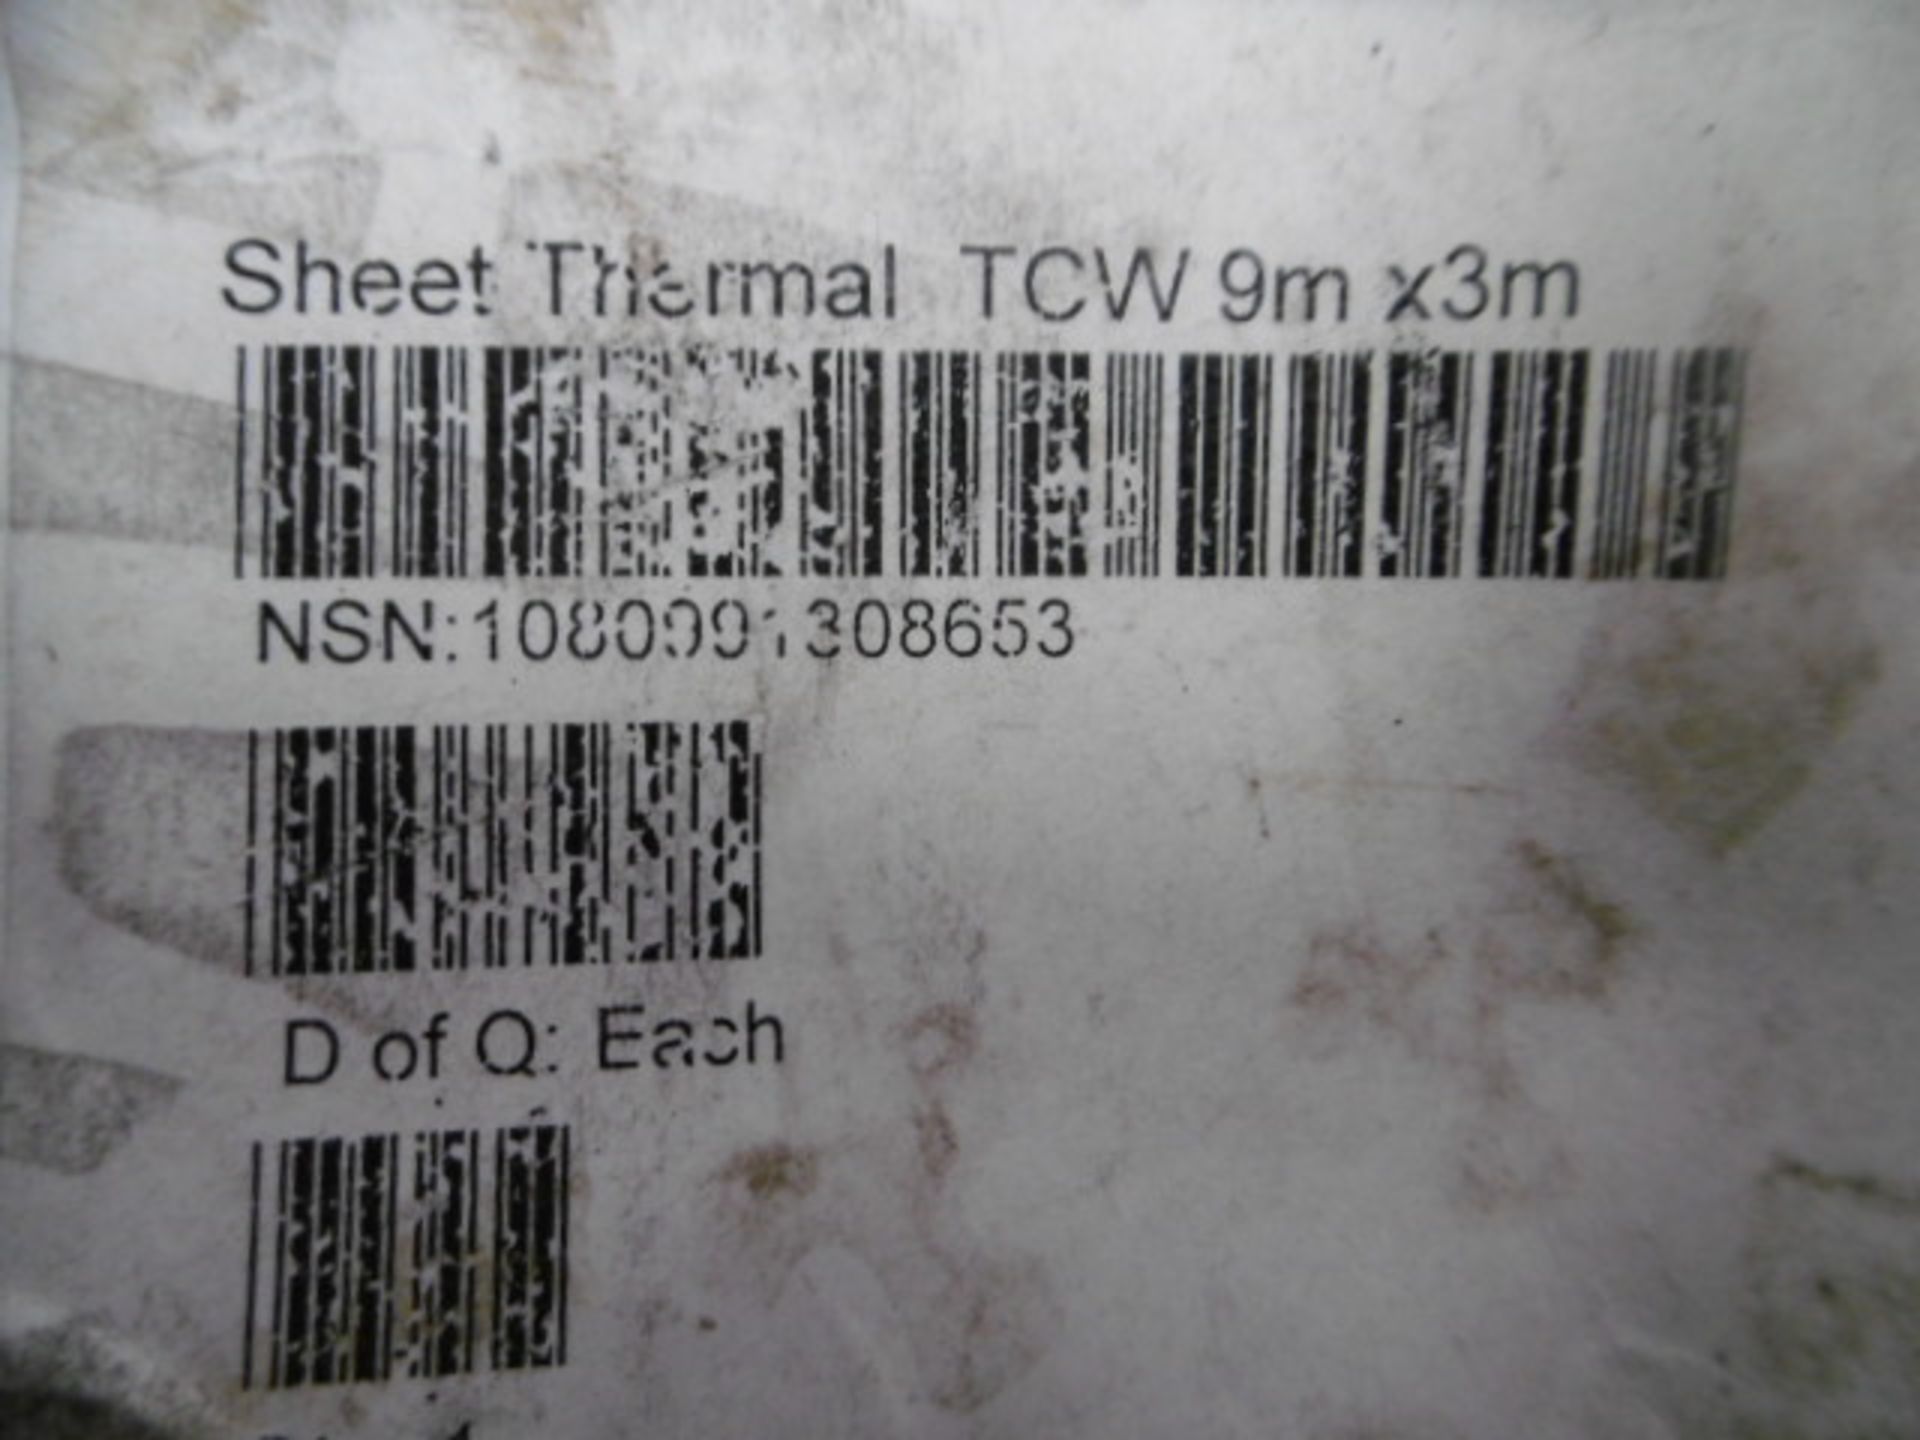 9m x 3m Thermal Sheet - Image 5 of 5